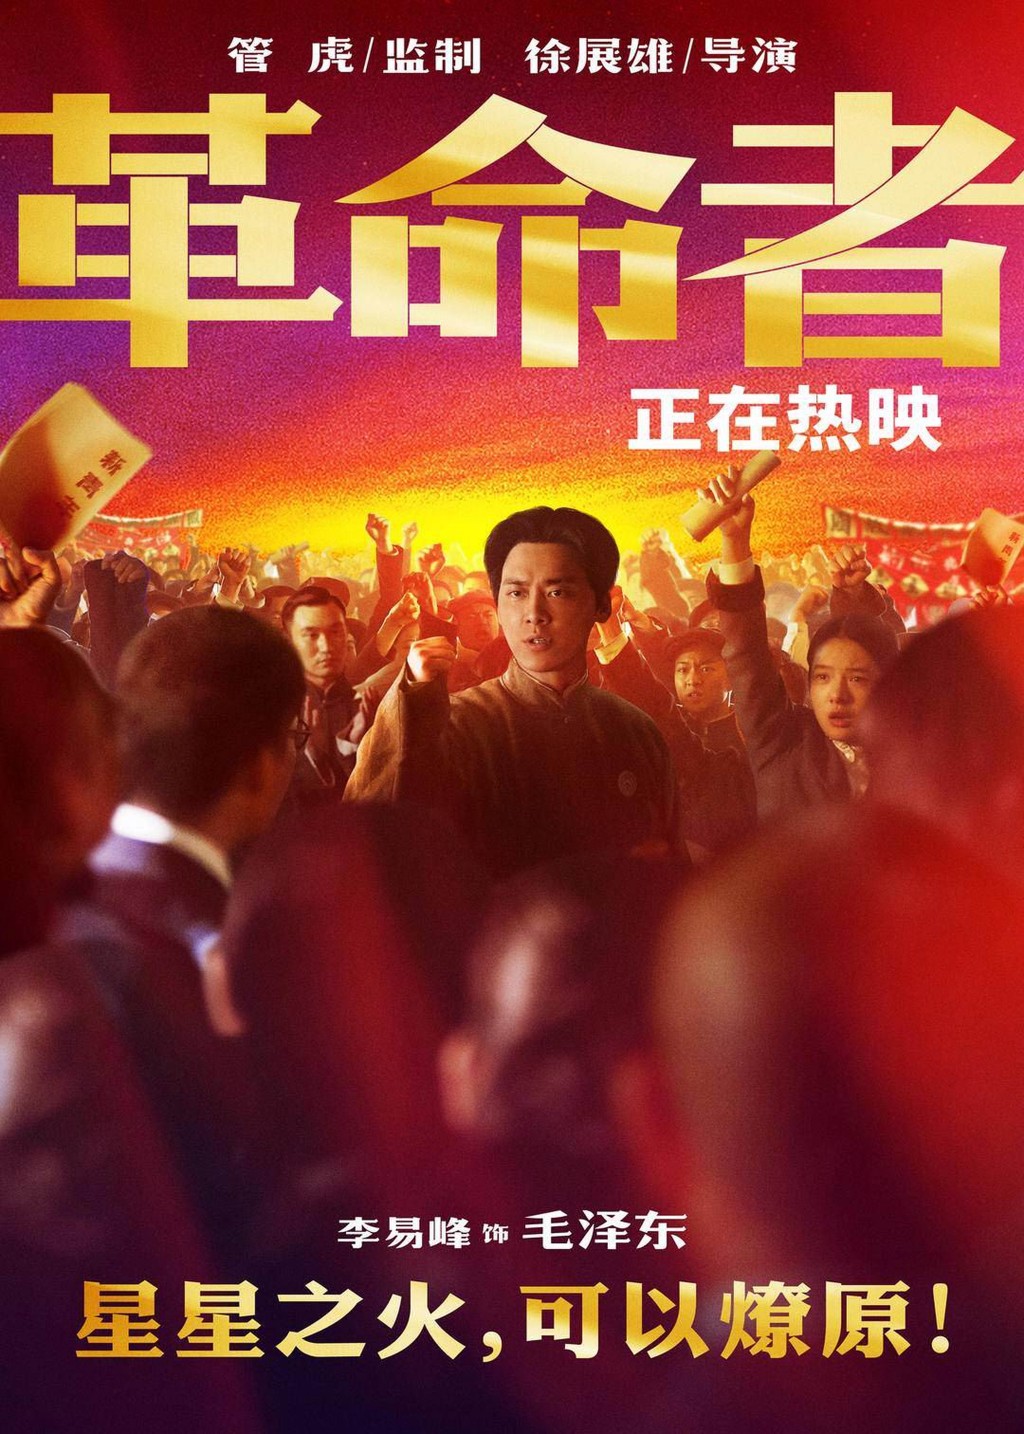 李易峰在電影《革命者》中扮演中共領袖毛澤東。互聯網